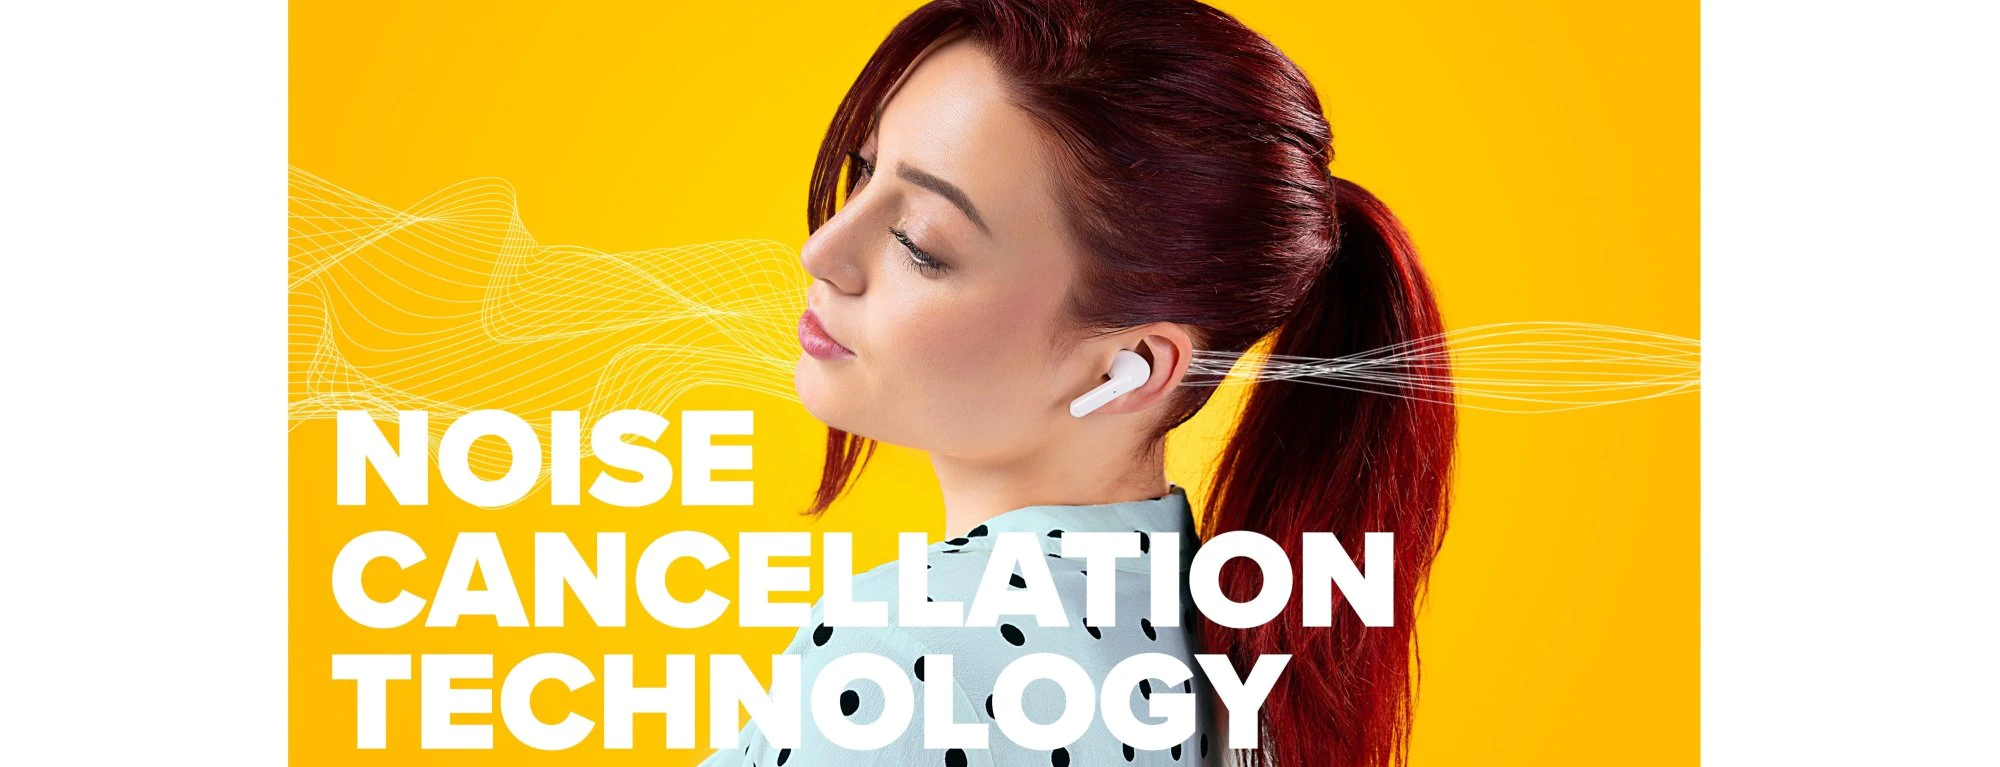 Bluetooth fejhallgató niceboy hive pins 3 anc kihangosító mikrofon app ion kiegyenlítő nagyszerű hangzás hosszú akkumulátor-élettartam töltési tok